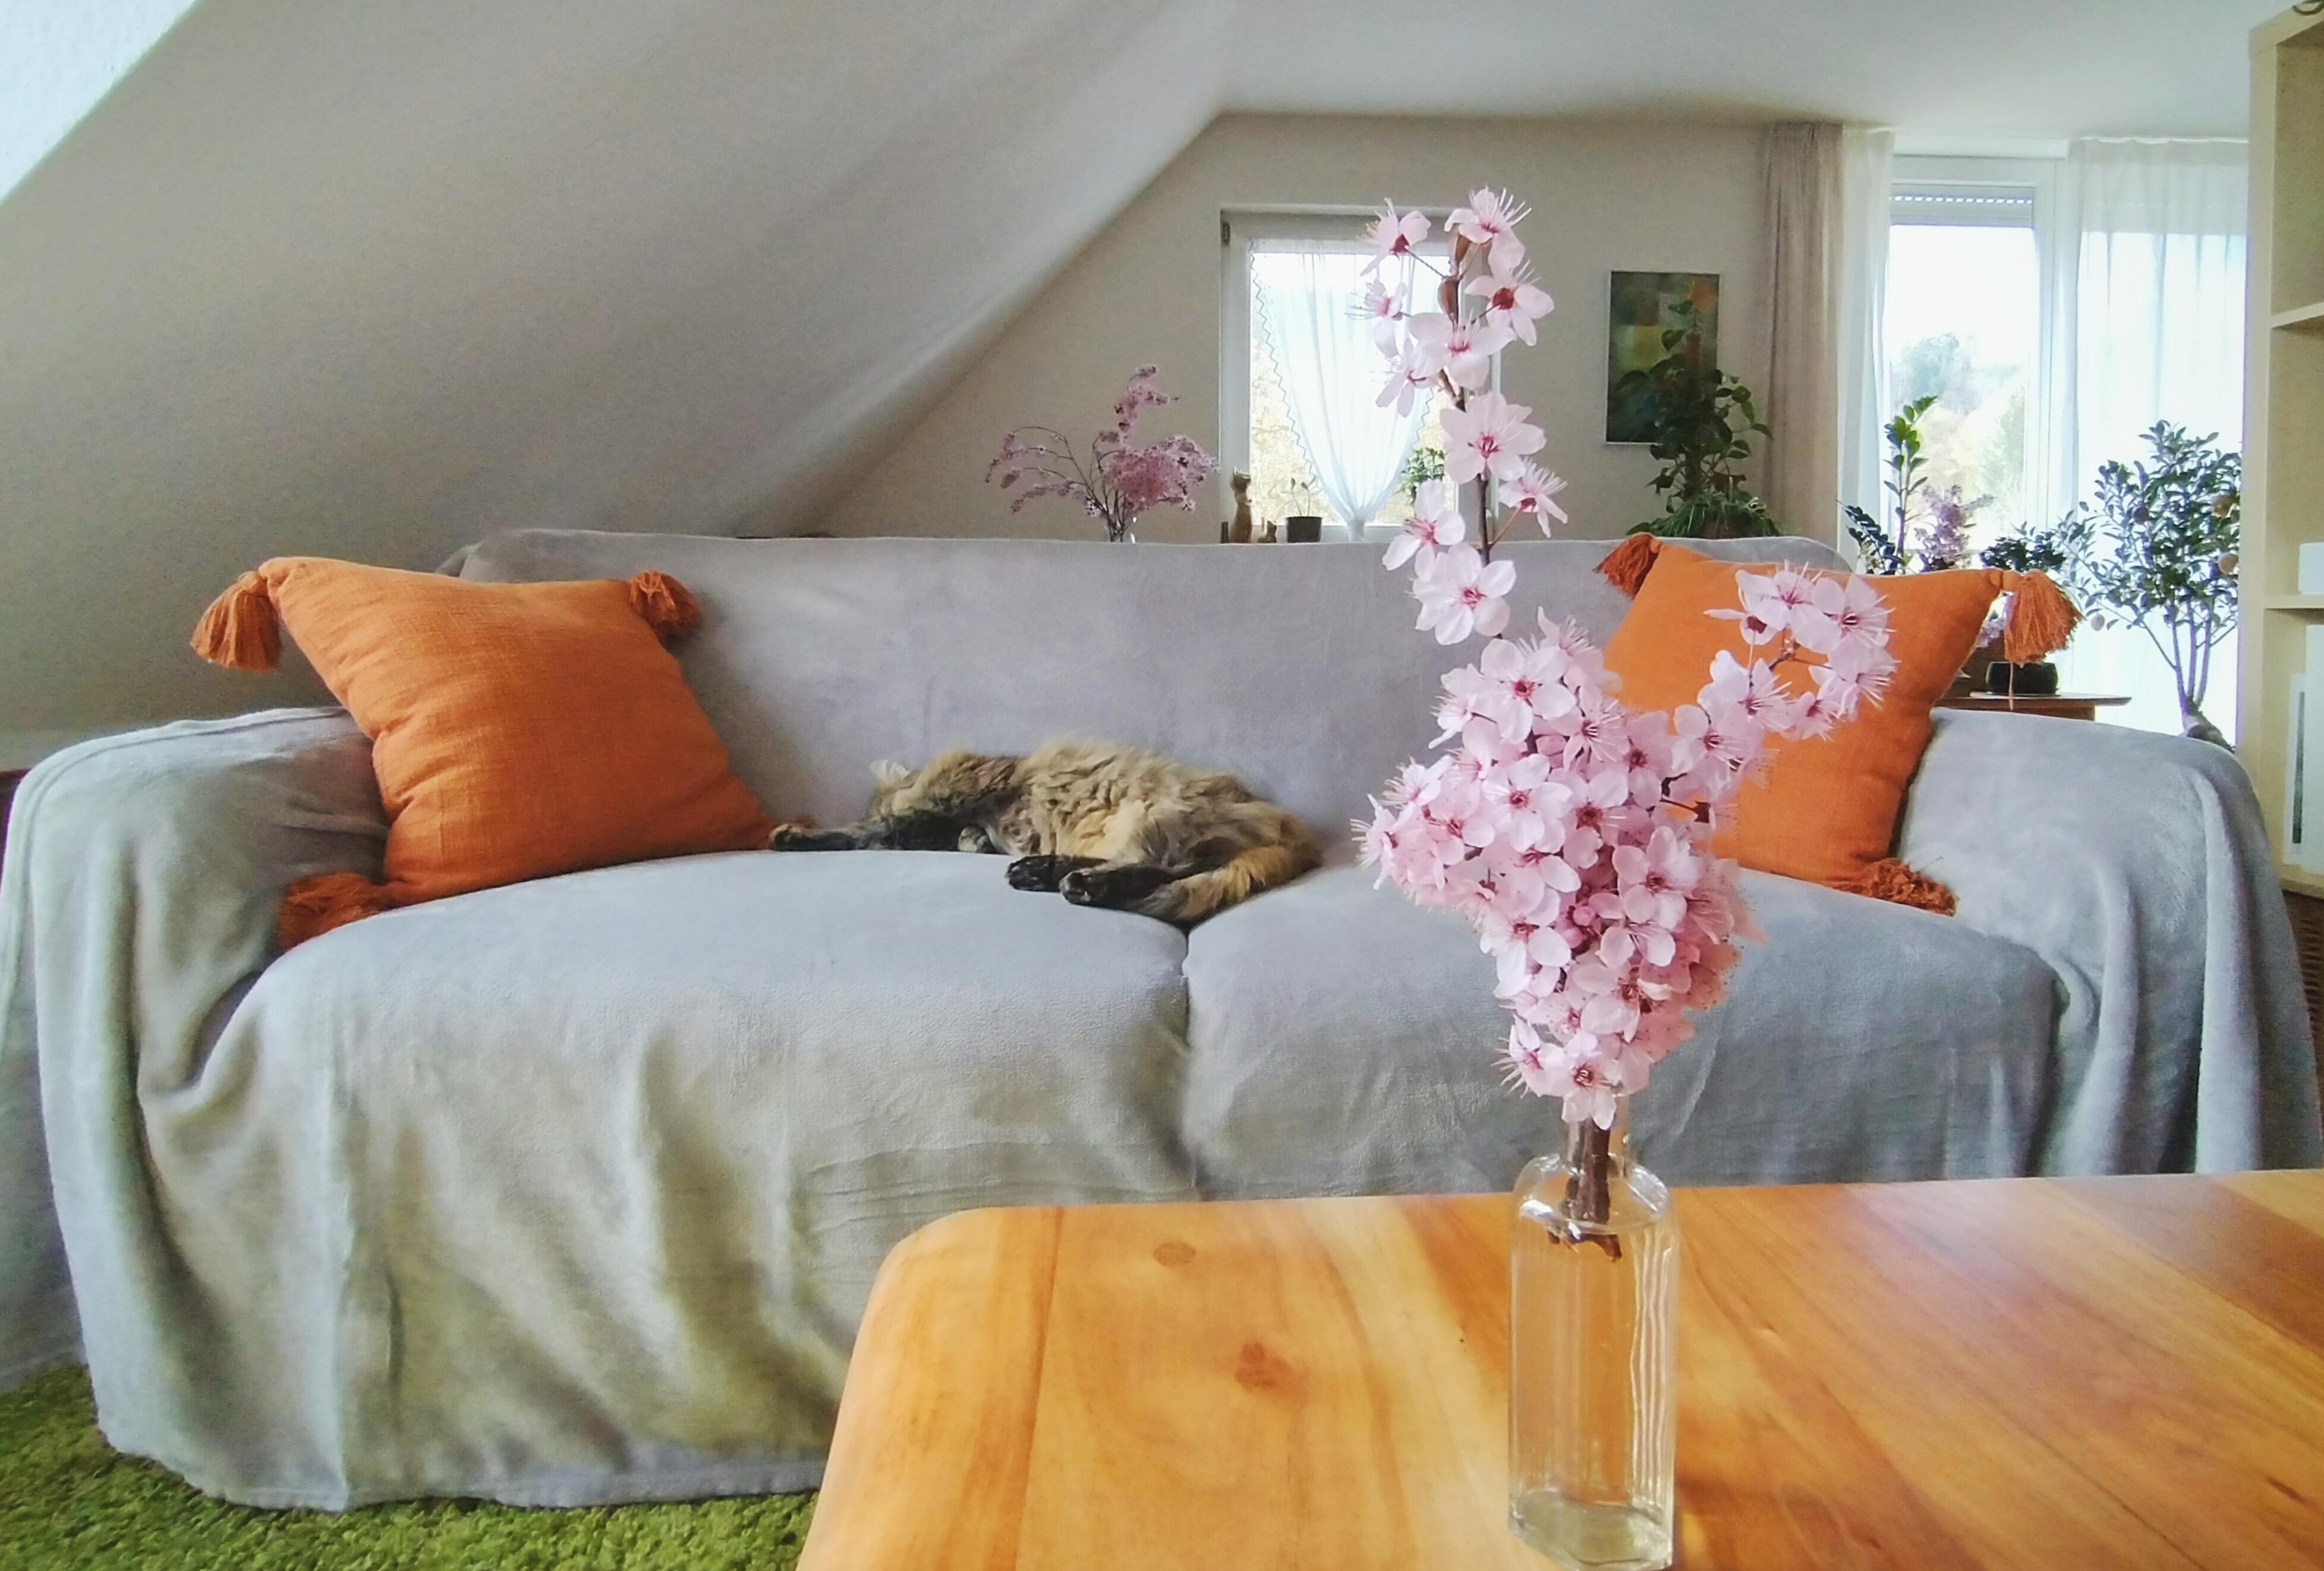 #wohnzimmer #couch #blüten #frischeblumen #kissen #katze #schrägdach #dachschräge